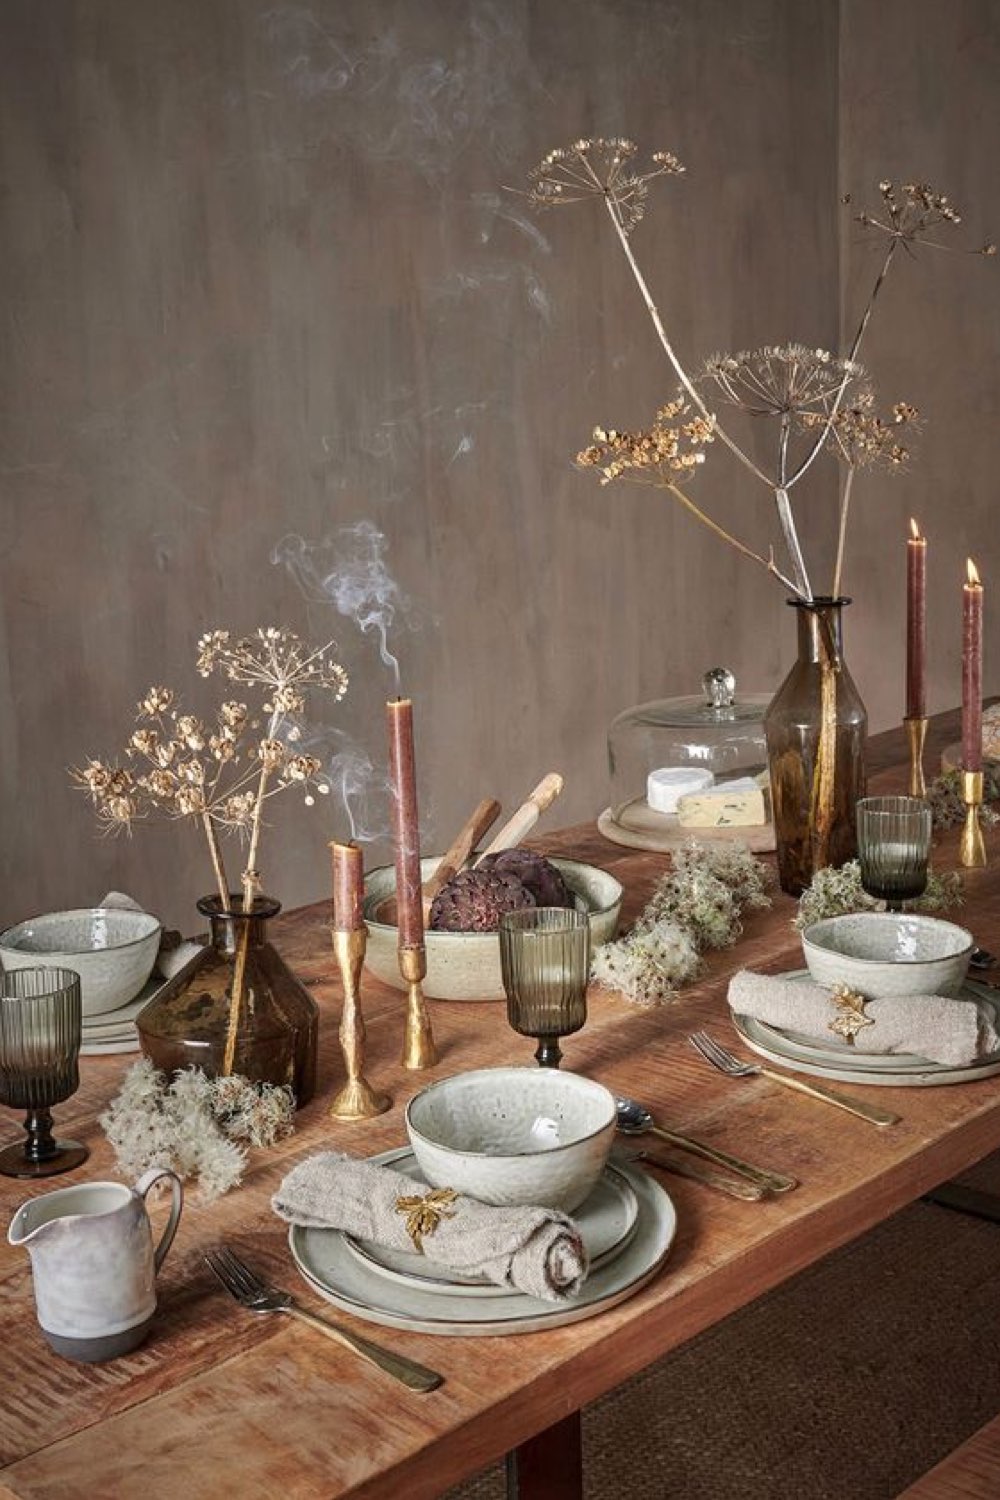 decoration table automne a copier chic simple slow living bois céramique grise vaisselle bougies fleurs séchées 